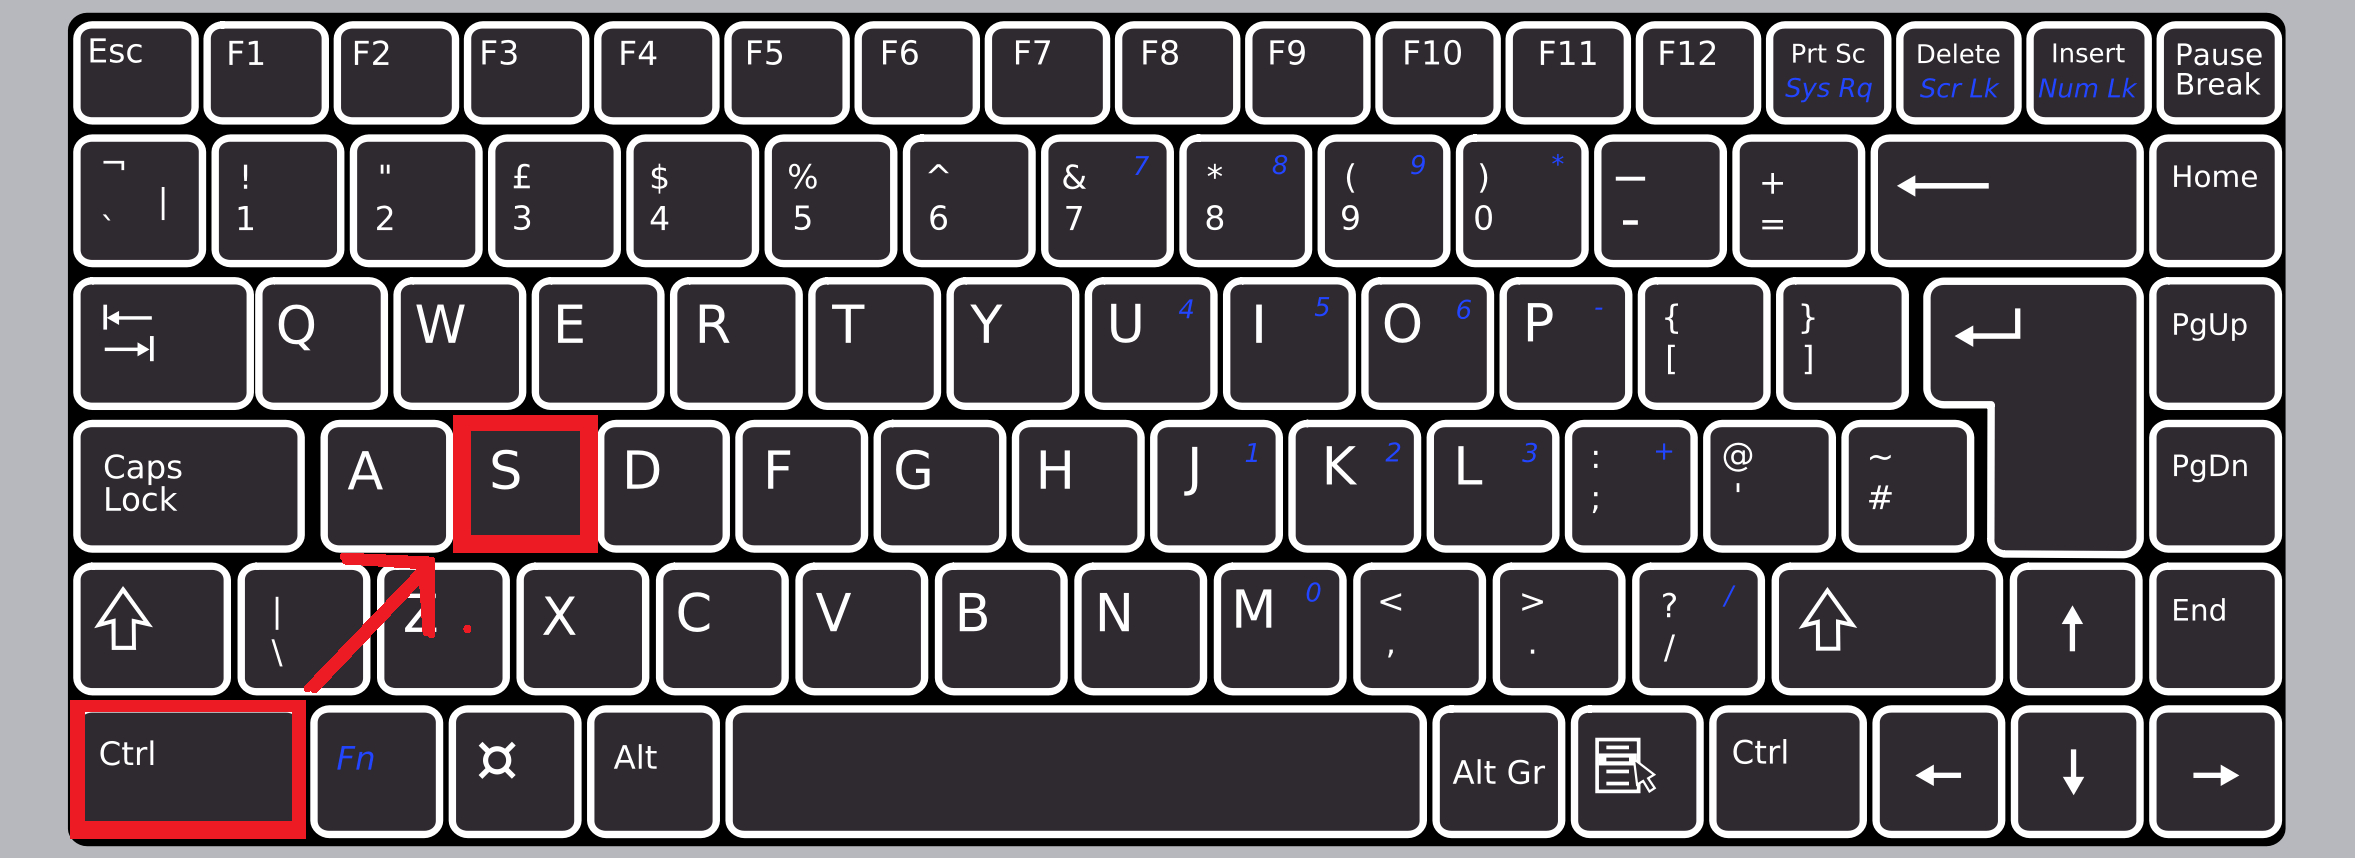 popkey keyboard